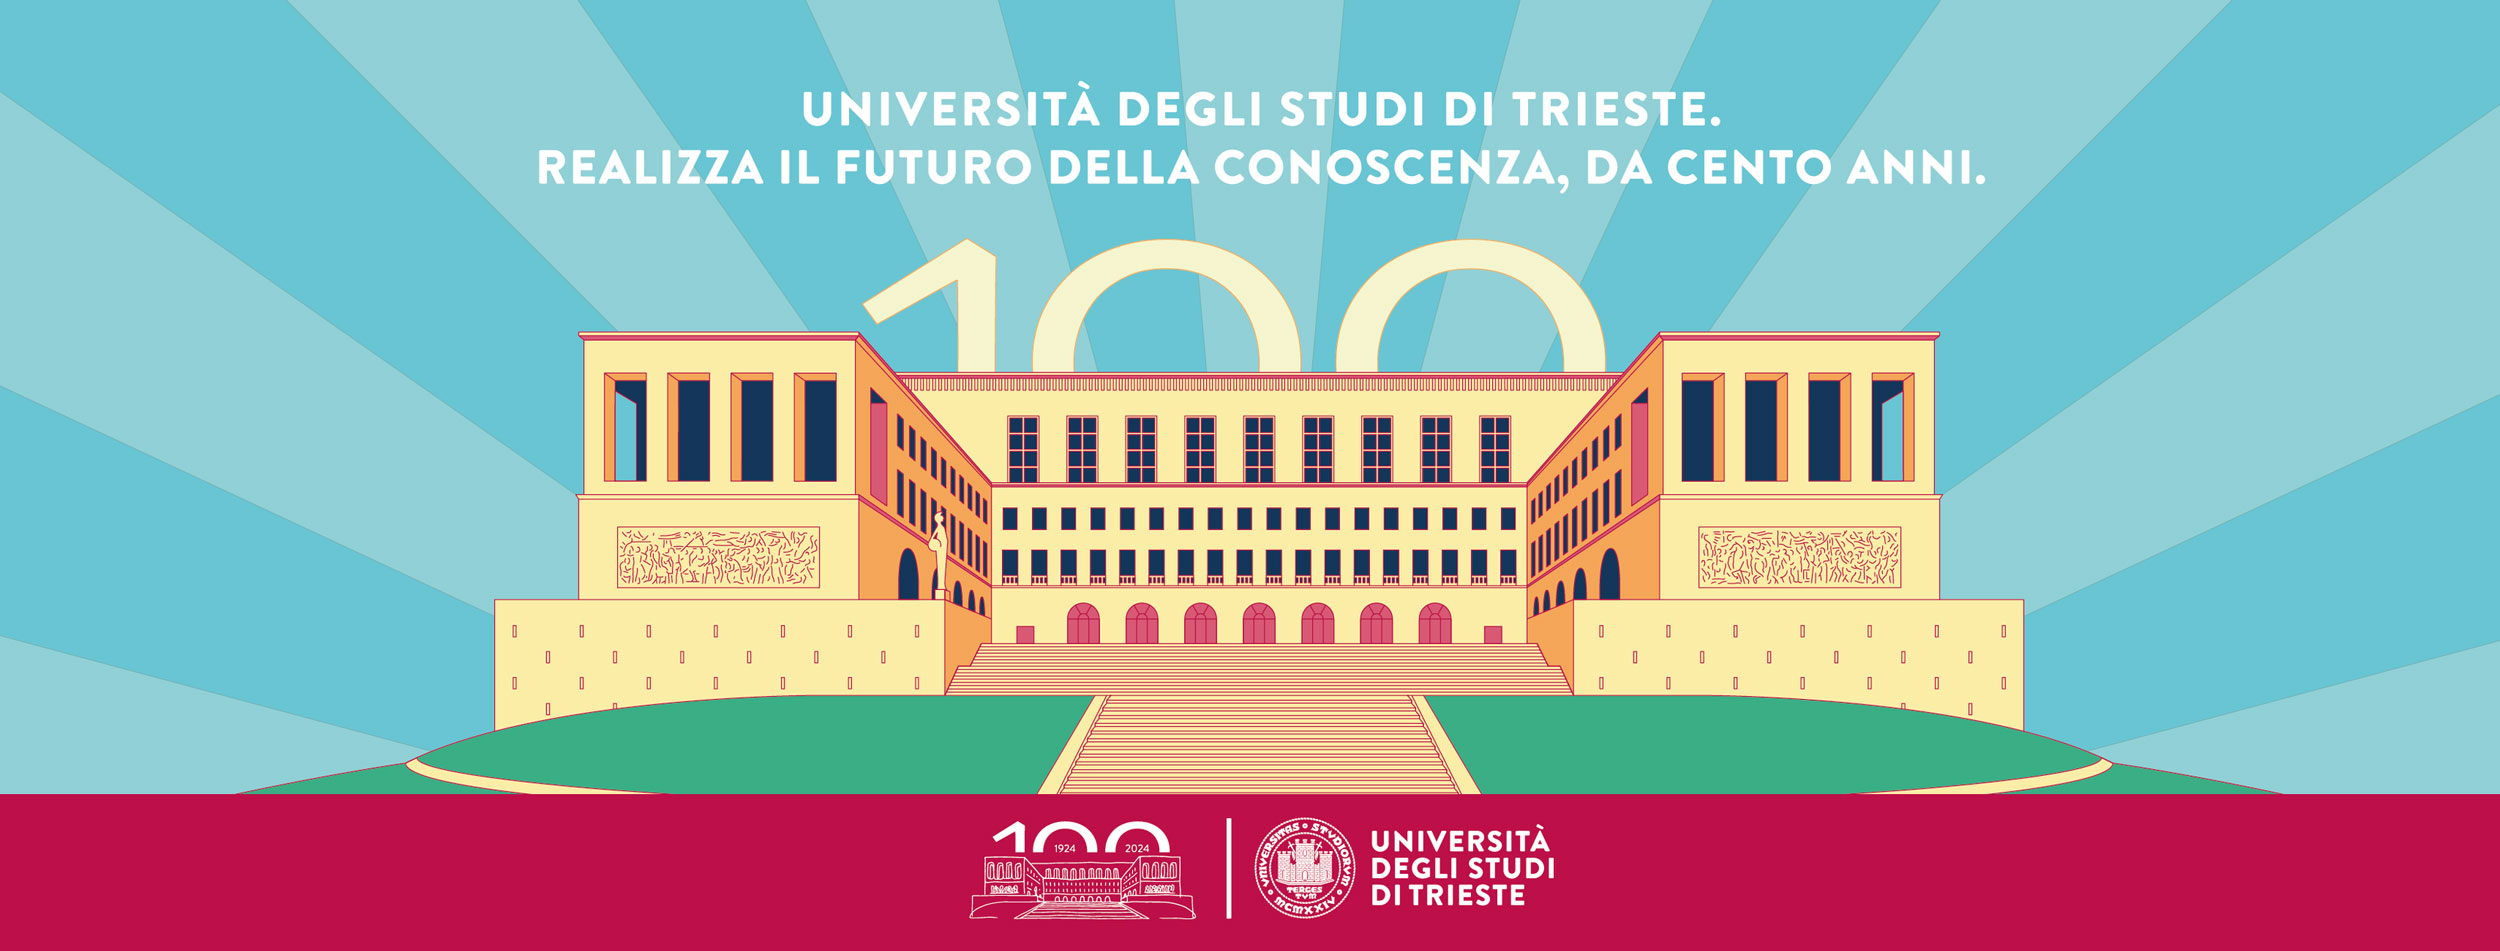 Università di Trieste - UniTS - centenario 100 anni